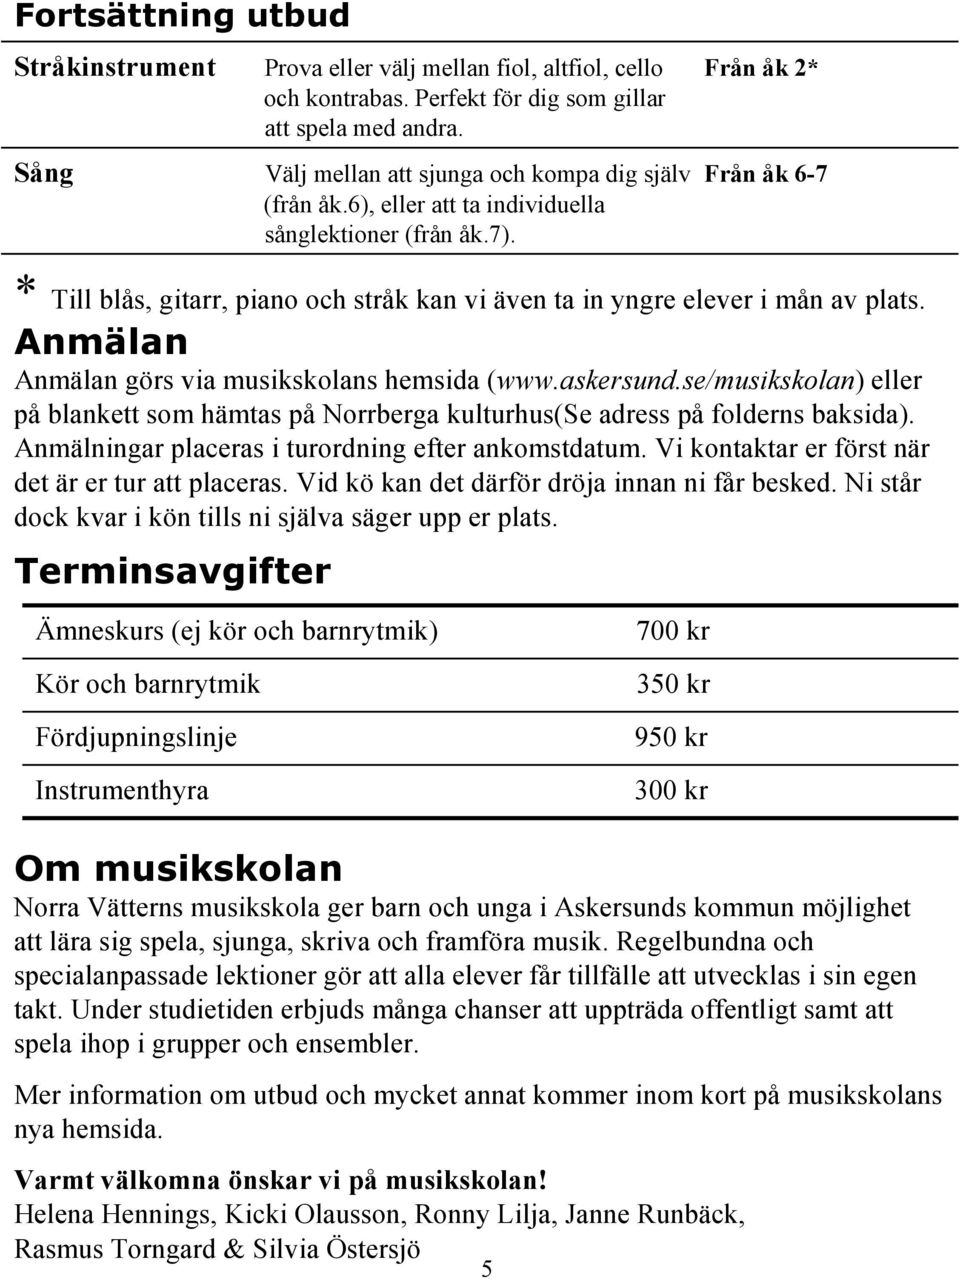 * Till blås, gitarr, piano och stråk kan vi även ta in yngre elever i mån av plats. Anmälan Anmälan görs via musikskolans hemsida (www.askersund.